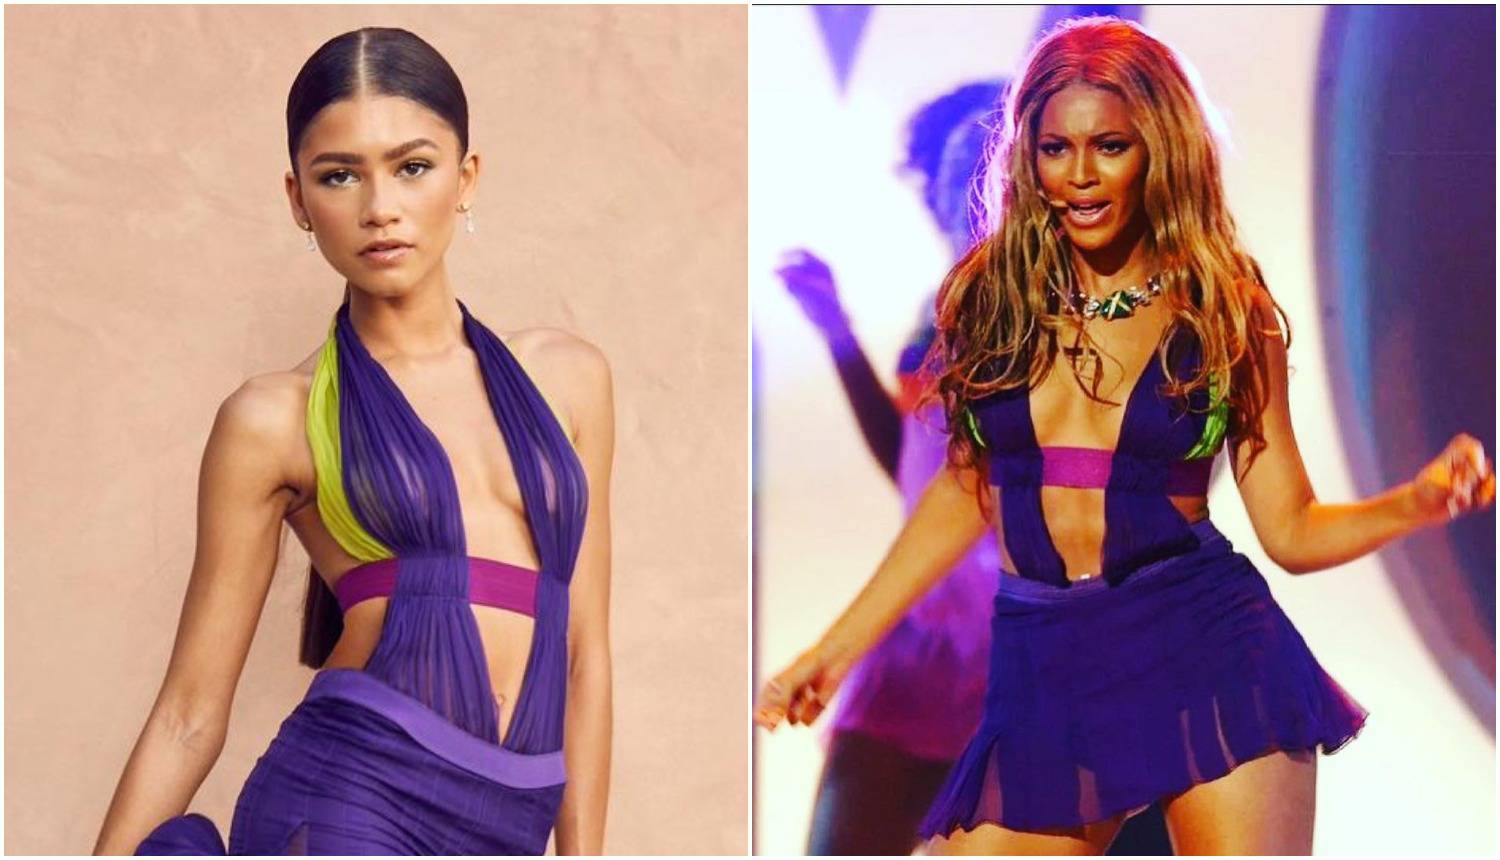 Zendaya odala počast Beyoncé u fantastičnoj Versace haljini, 18 godina nakon njezinog nastupa